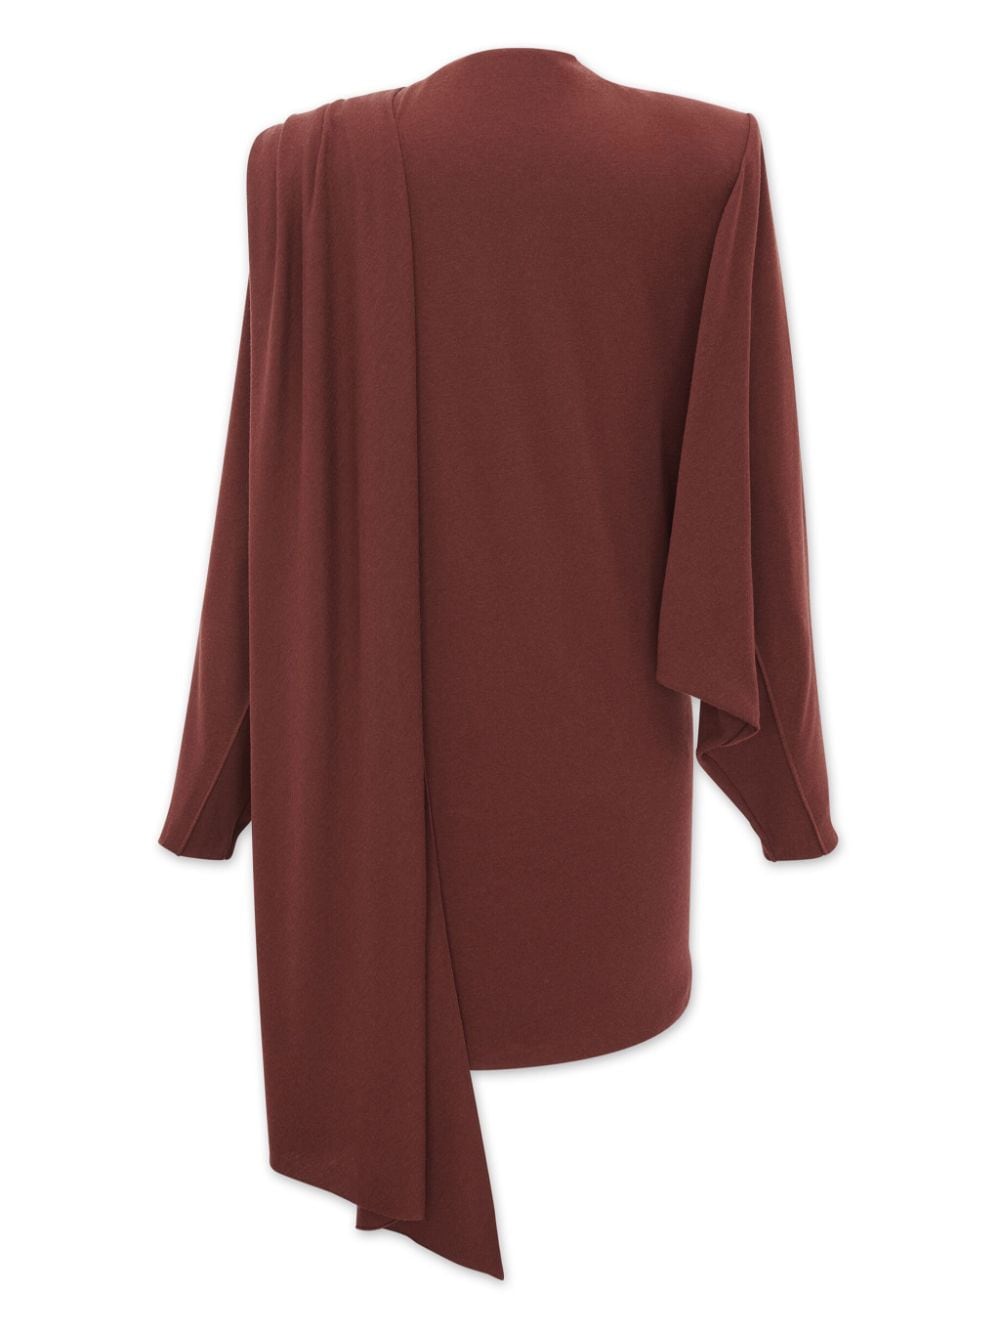 Saint Laurent Dresses Bordeaux-women > clothing > dresses-Saint Laurent-Urbanheer